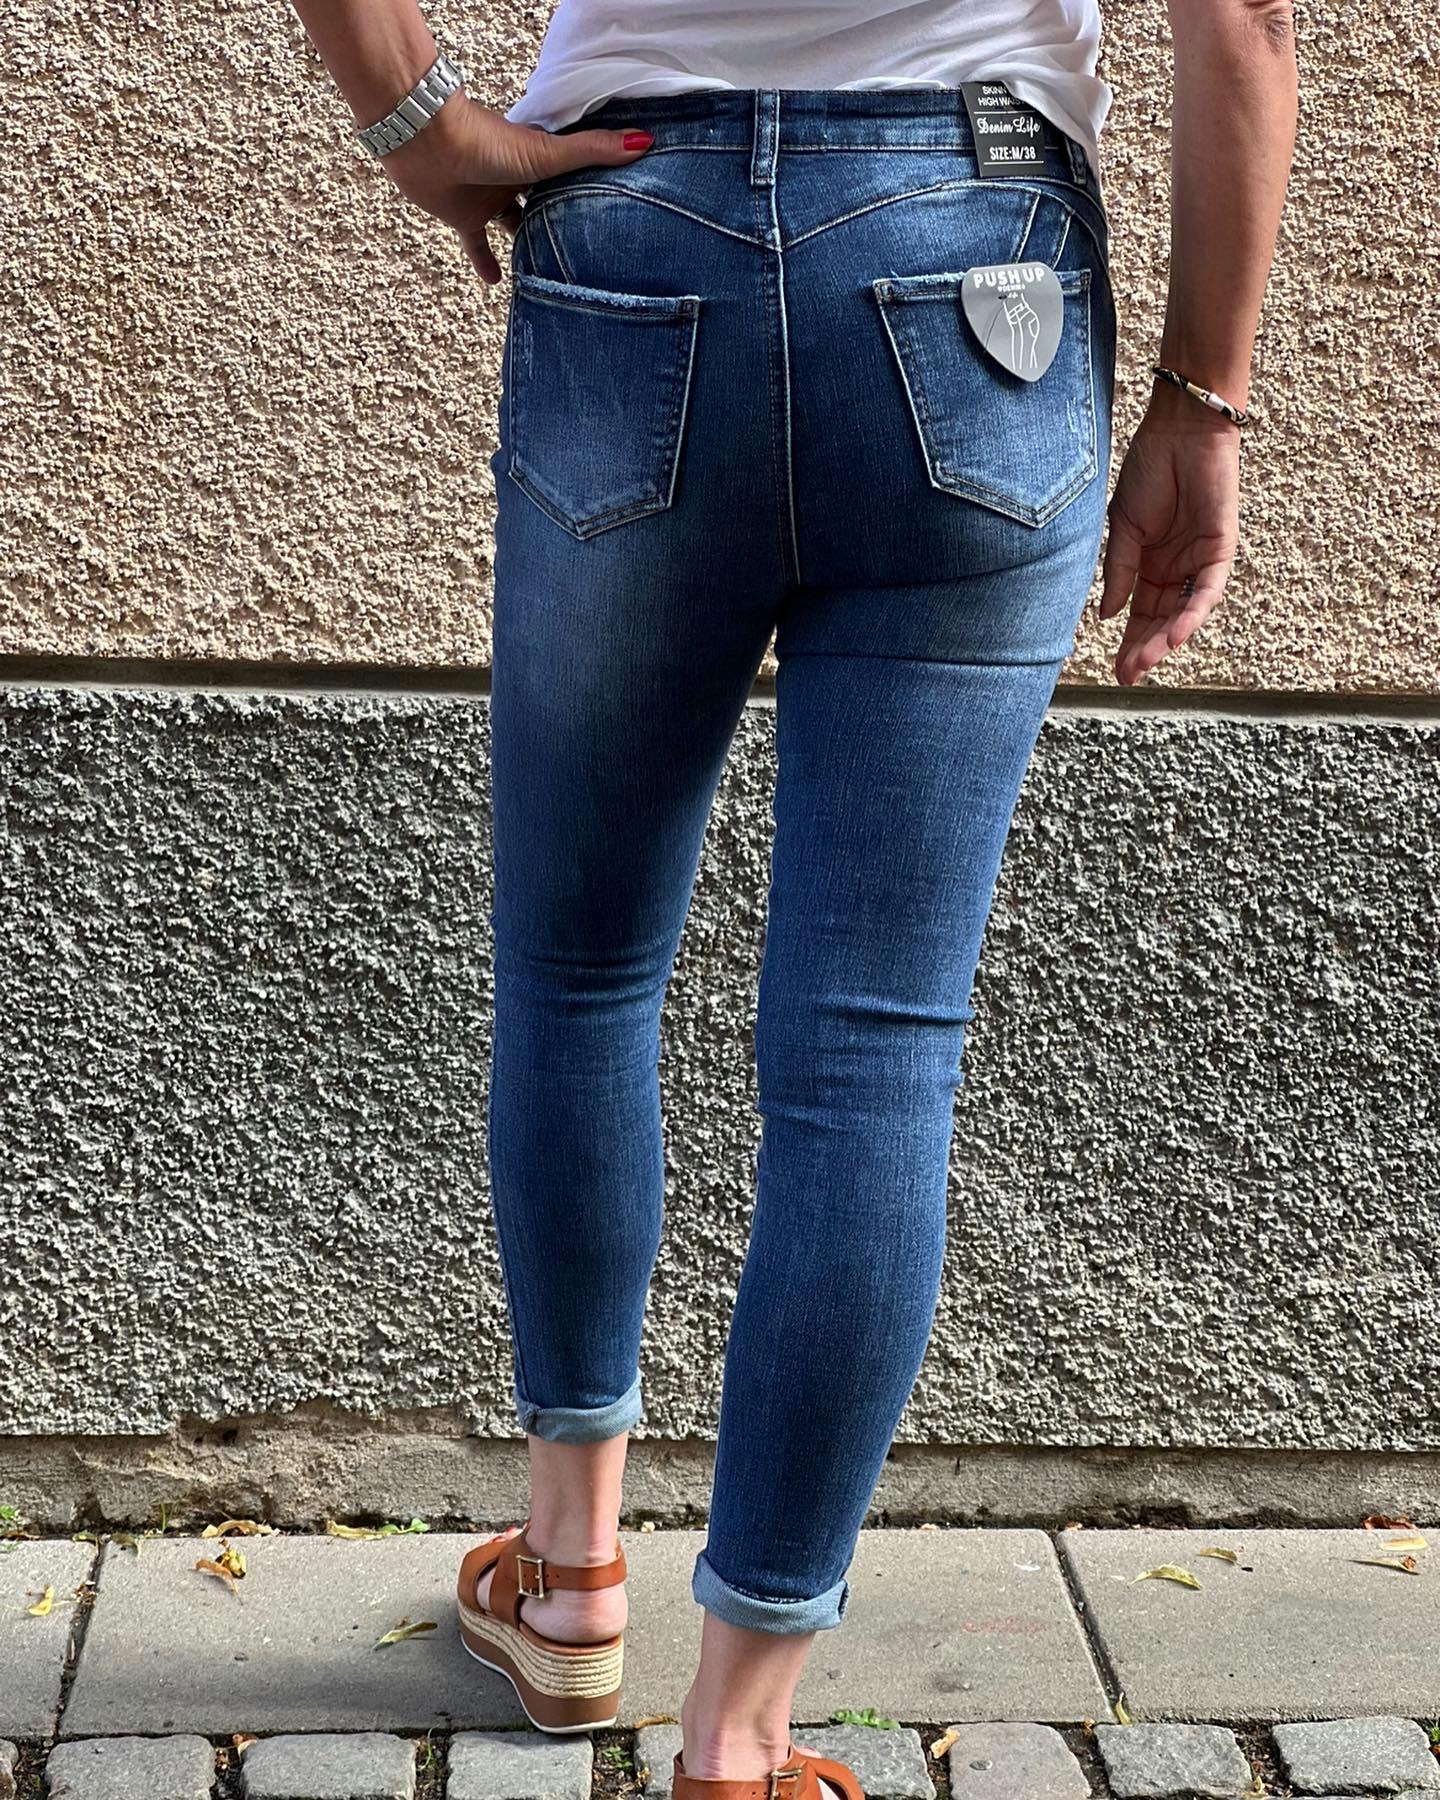 Plus size jeans